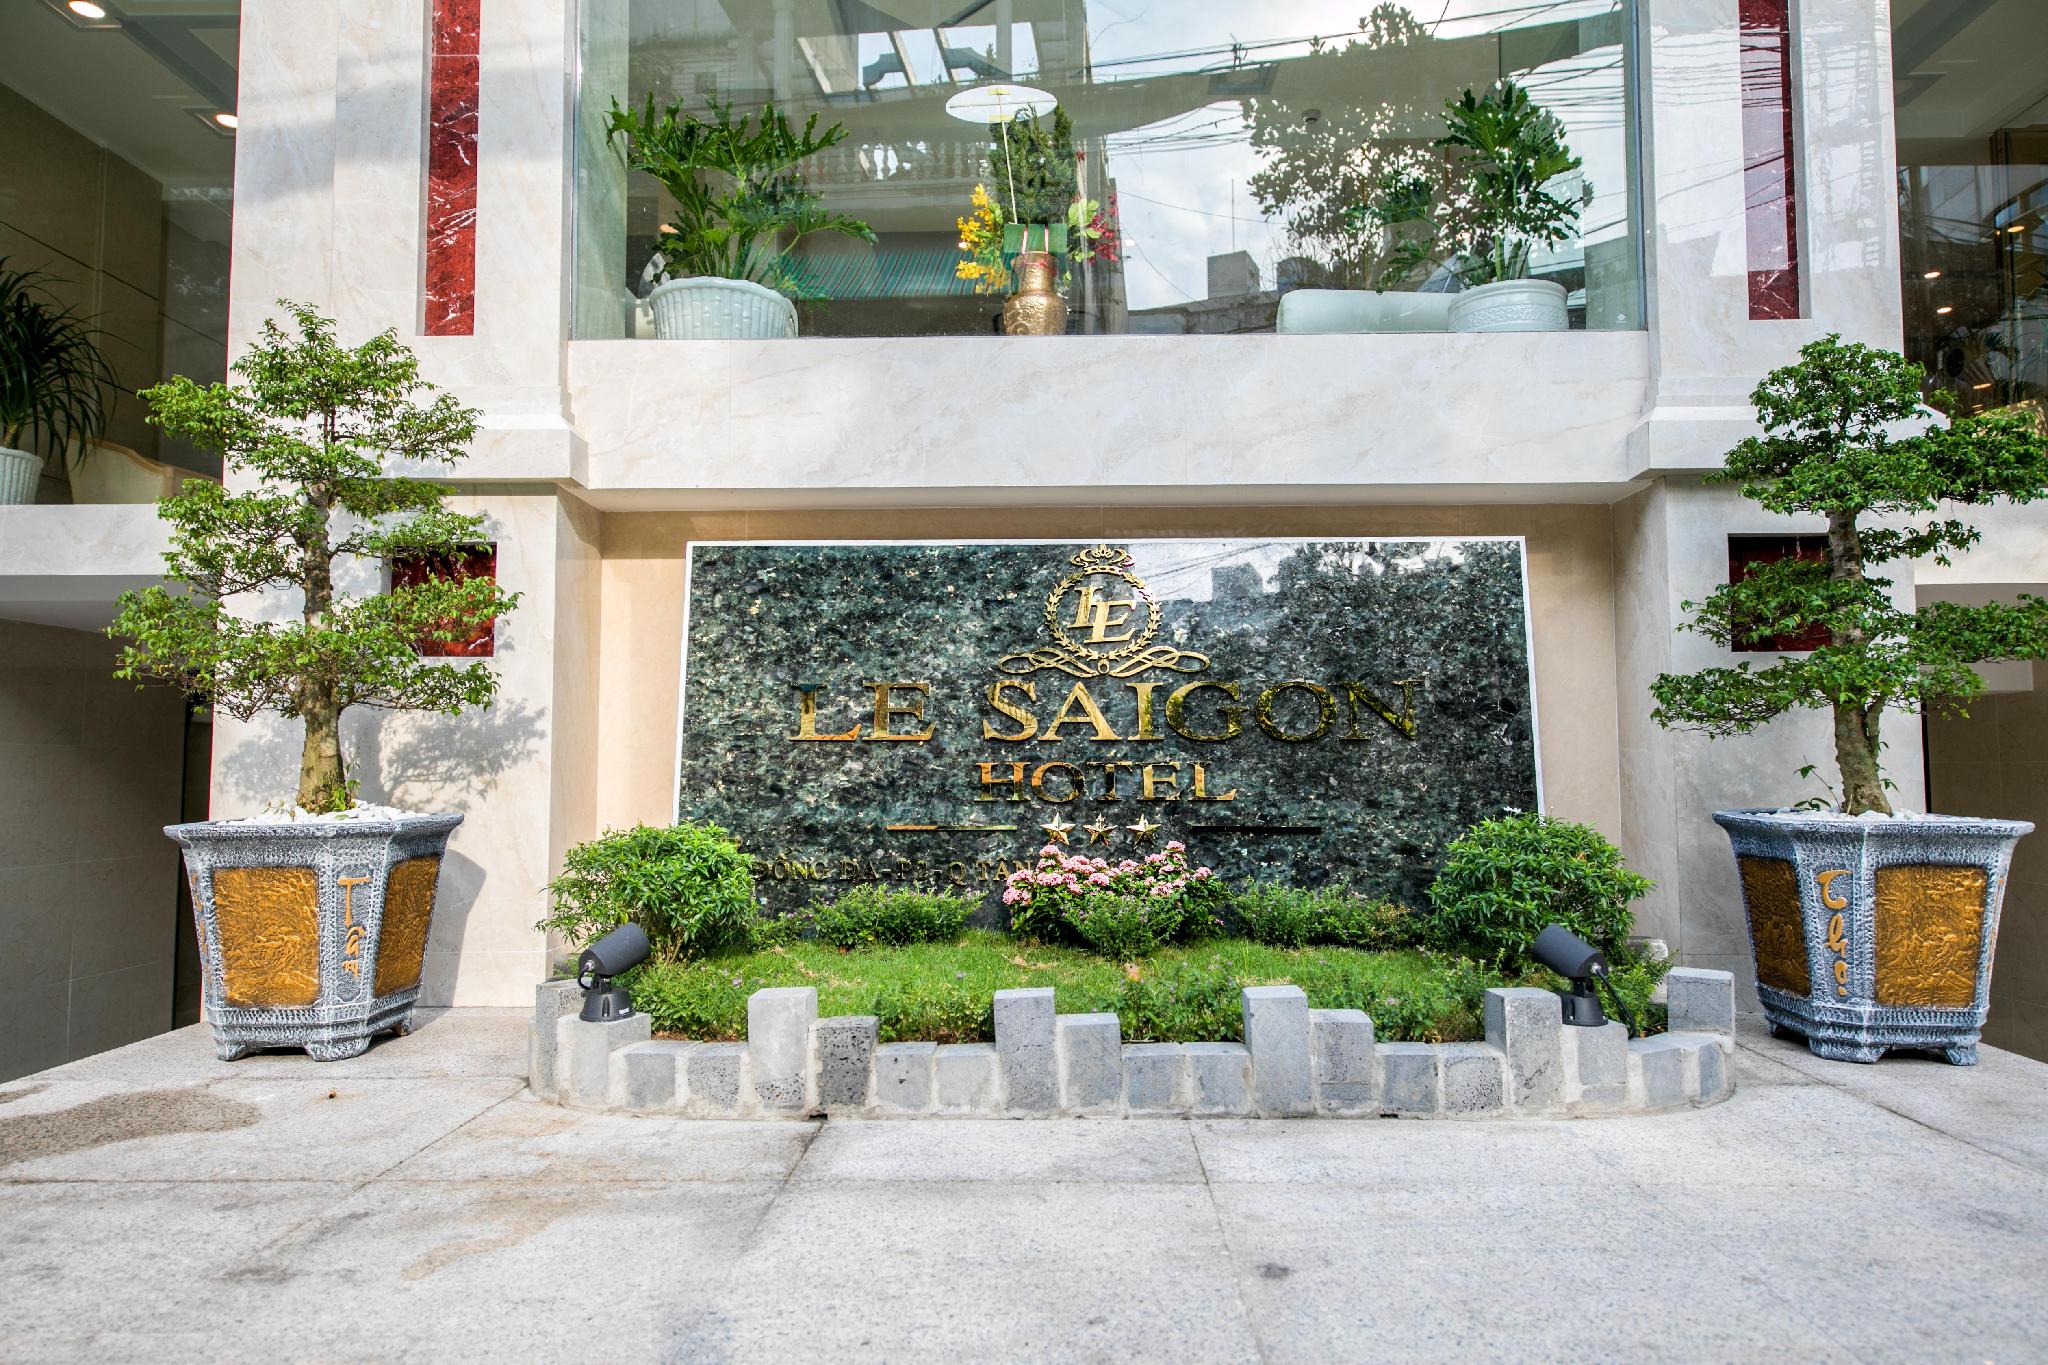 Le Saigon Hotel image 1